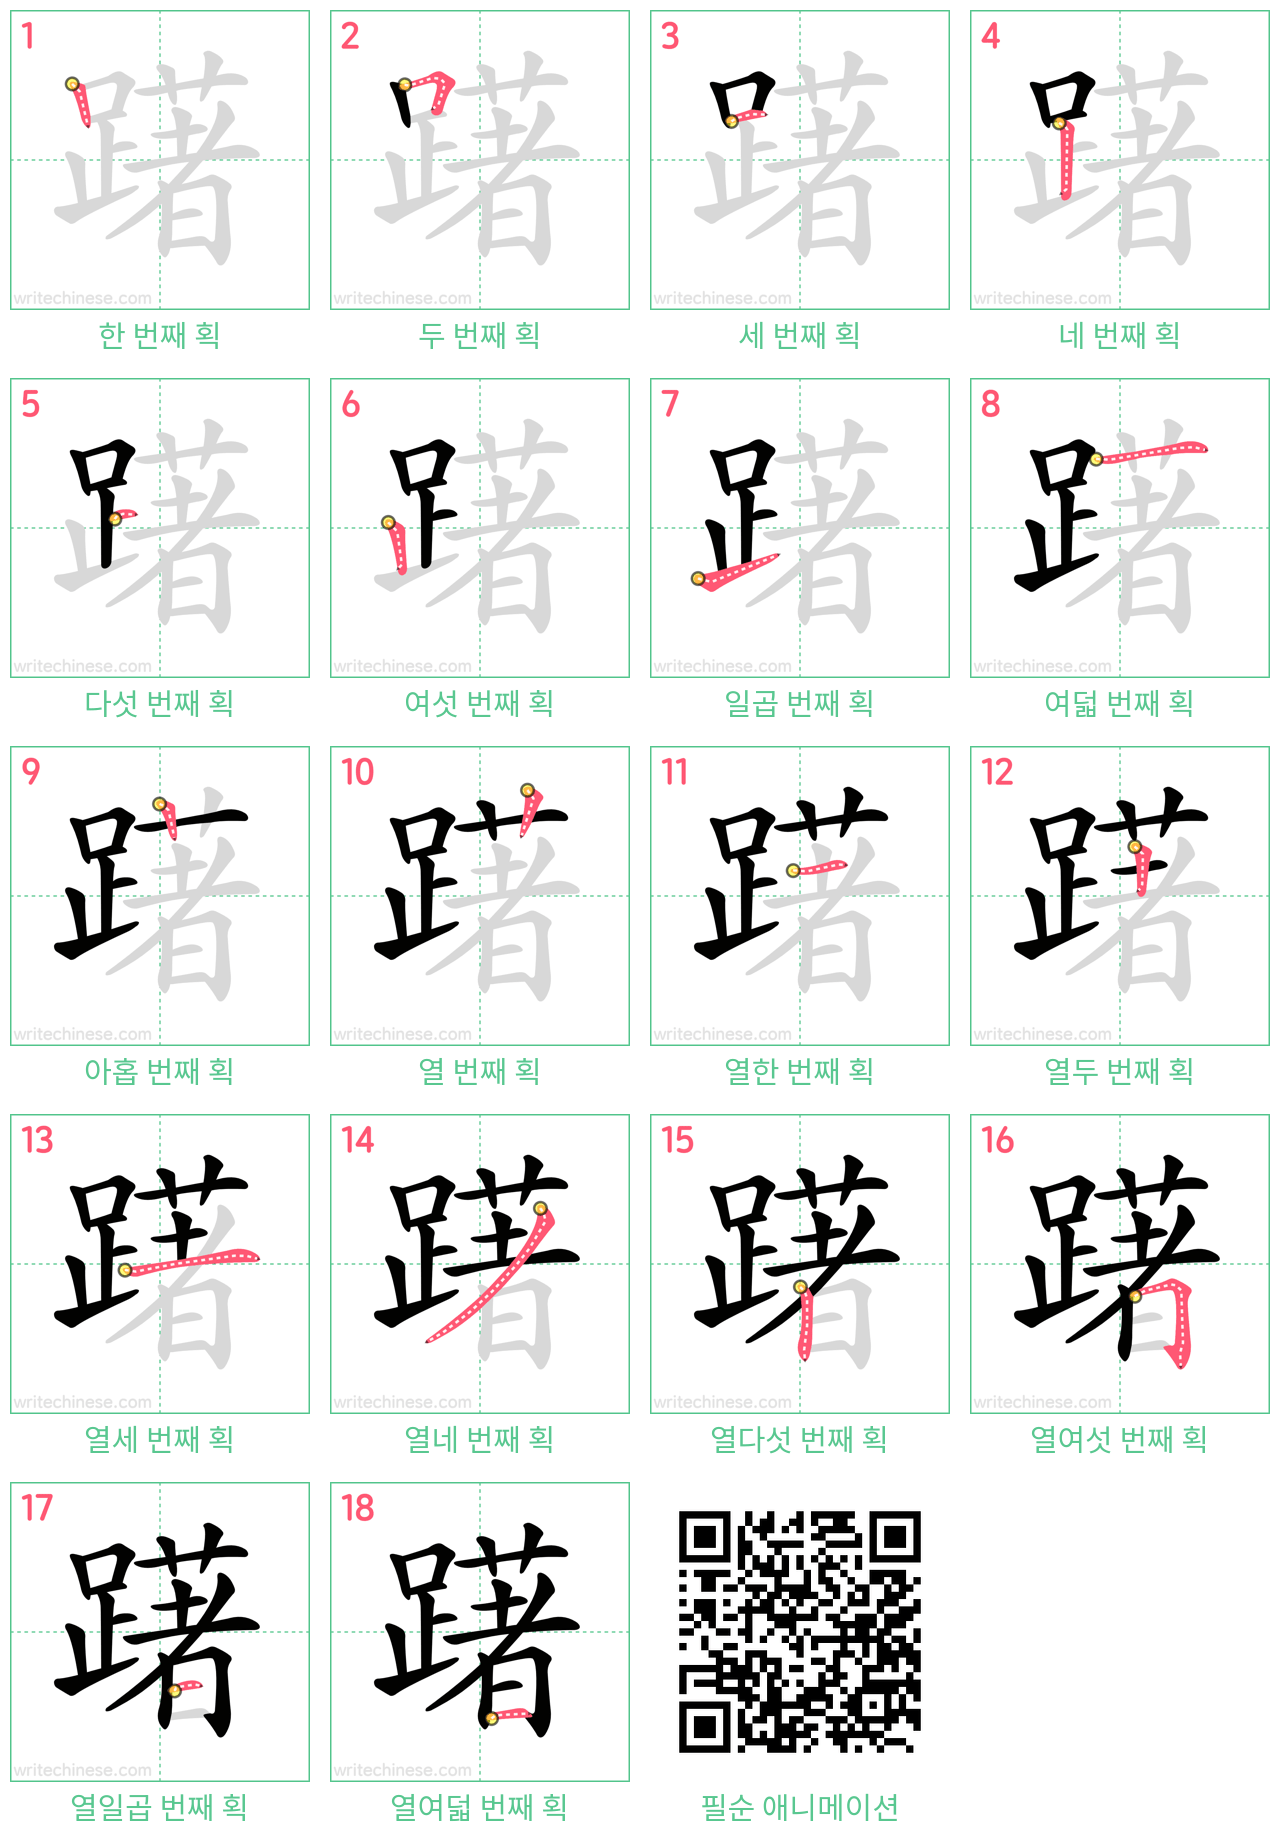 躇 step-by-step stroke order diagrams